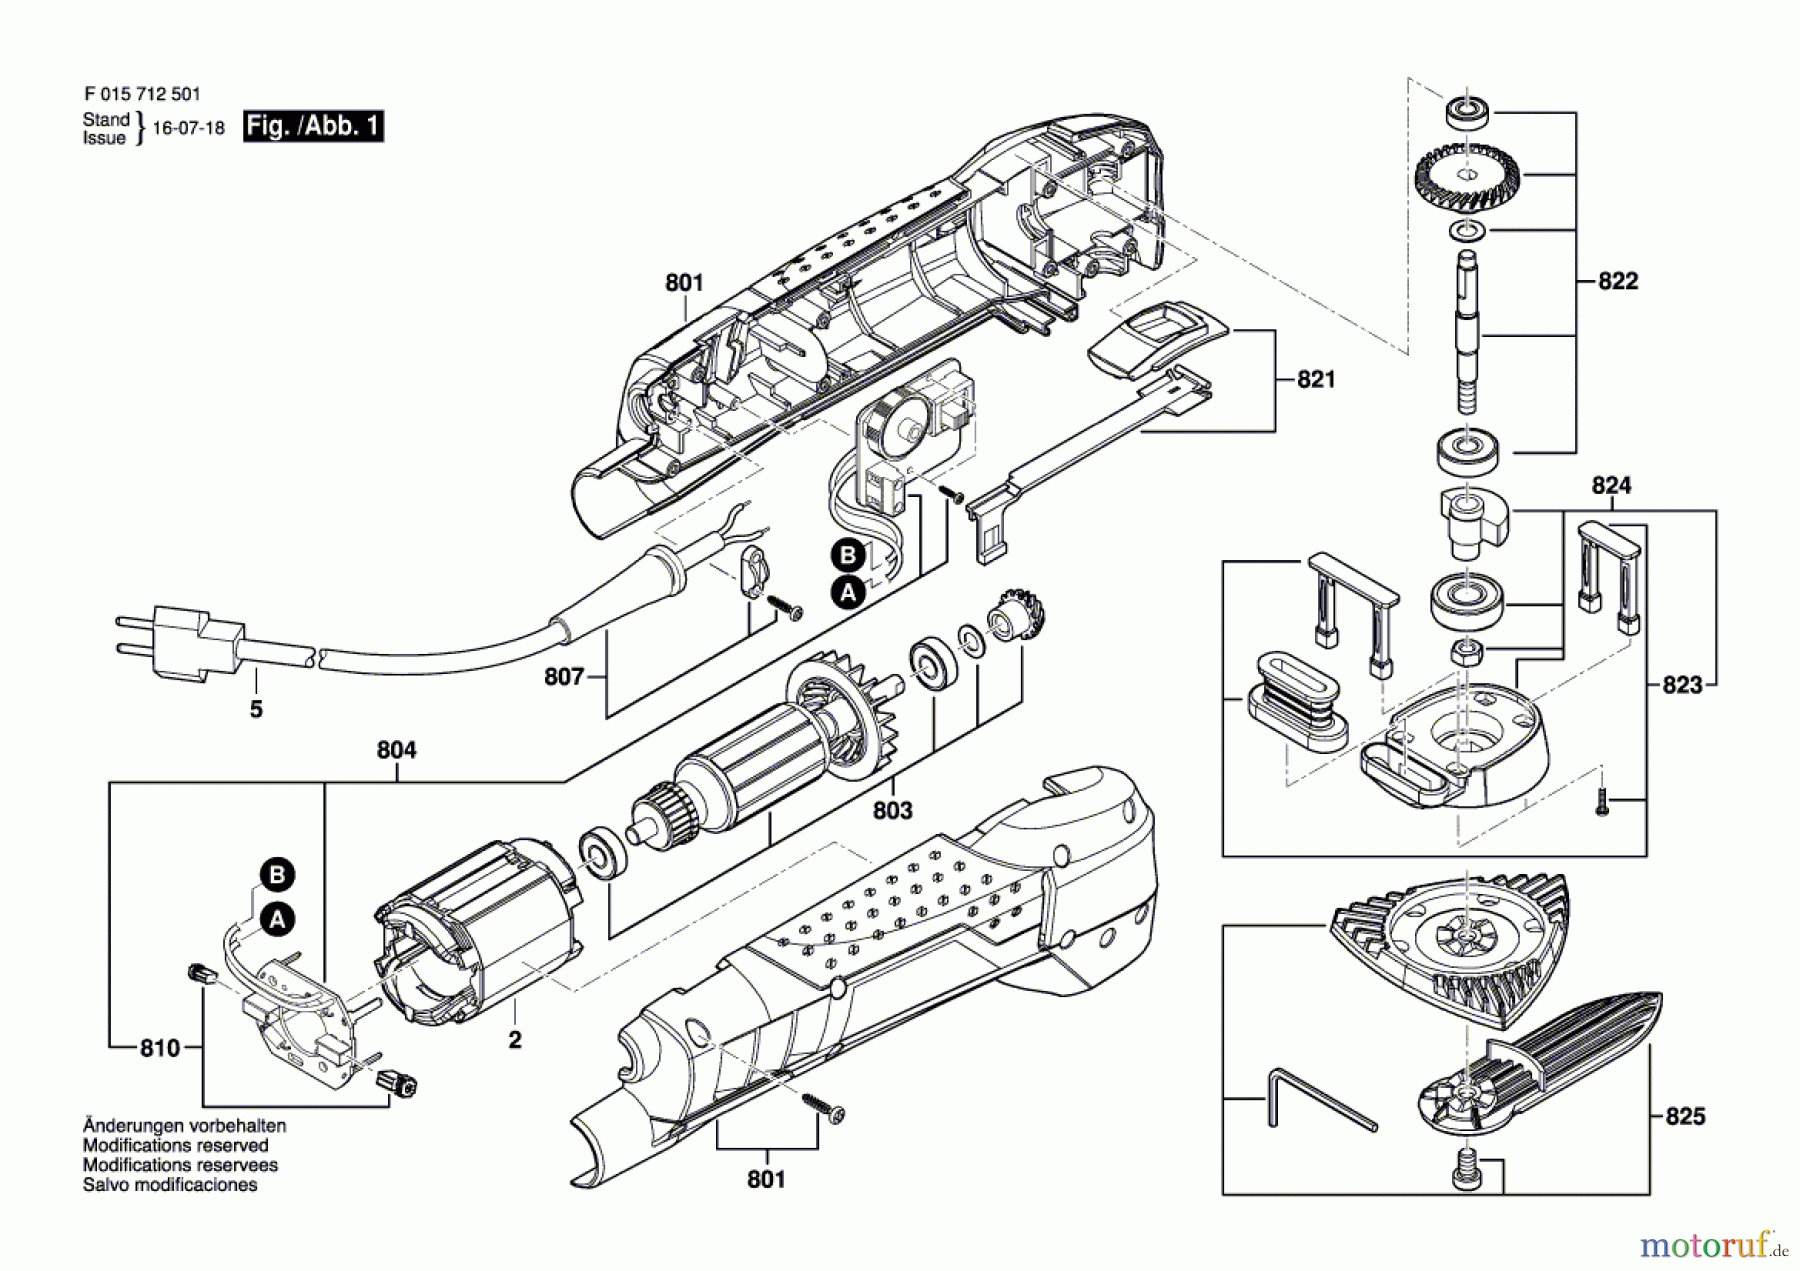  Bosch Werkzeug Hw-Deltaschleifer 7125 Seite 1